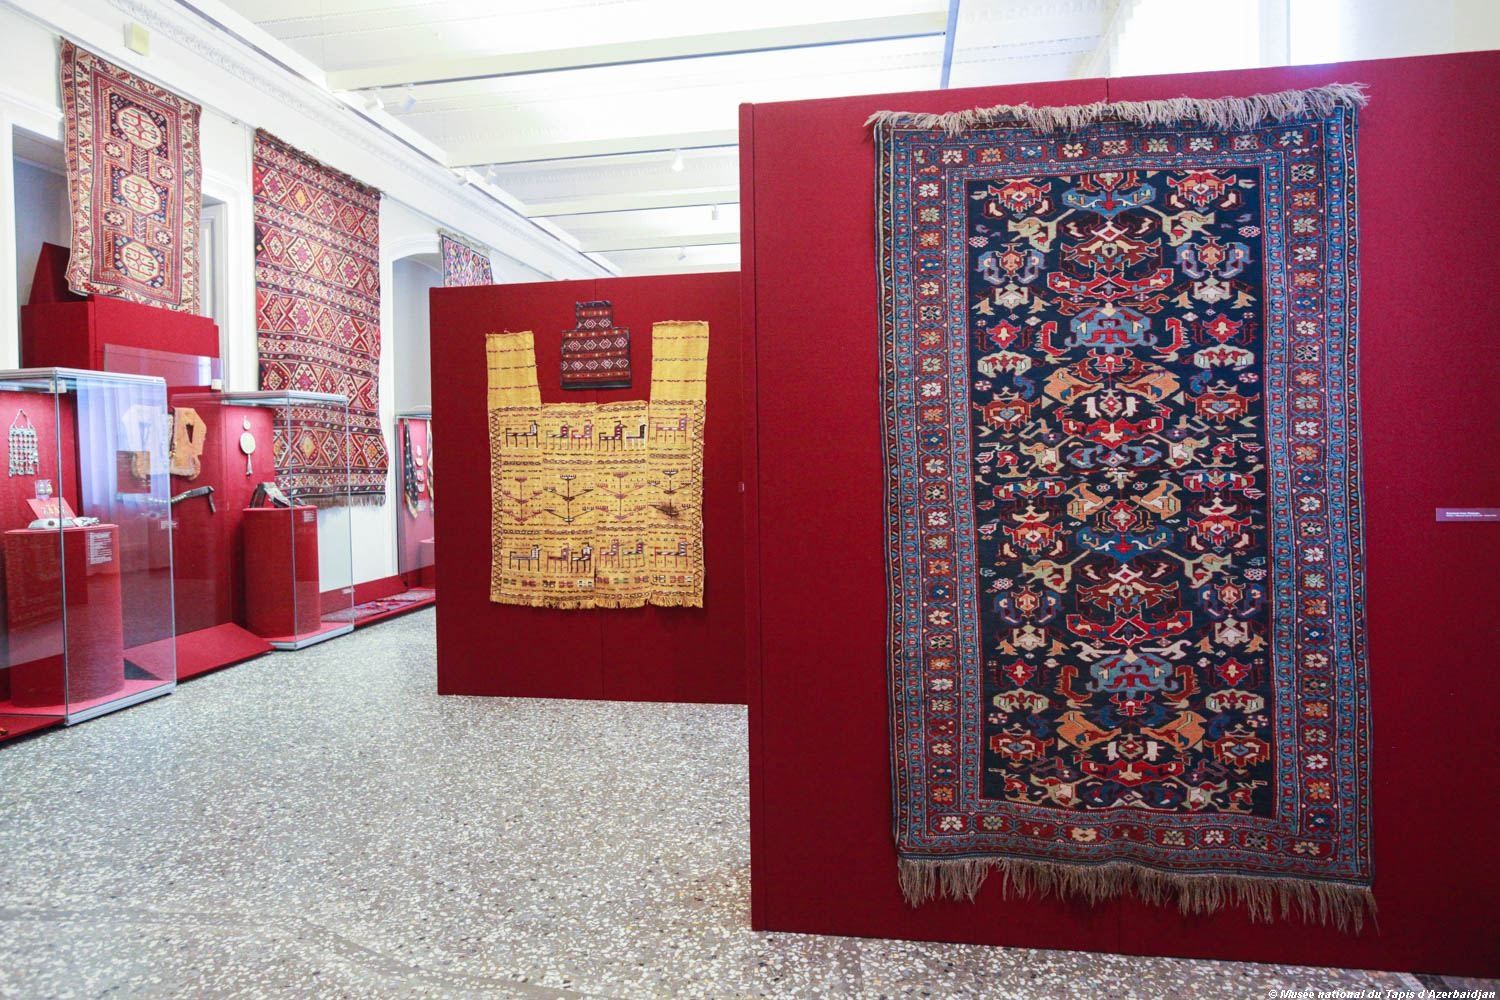 Le tapis « Surakhani » de Bakou, datant de la fin du XVIIIe siècle, et des œuvres d'art décoratif et appliqué des maîtres azerbaïdjanais des XIXe et XXe siècles sont présentés en Russie (PHOTO)